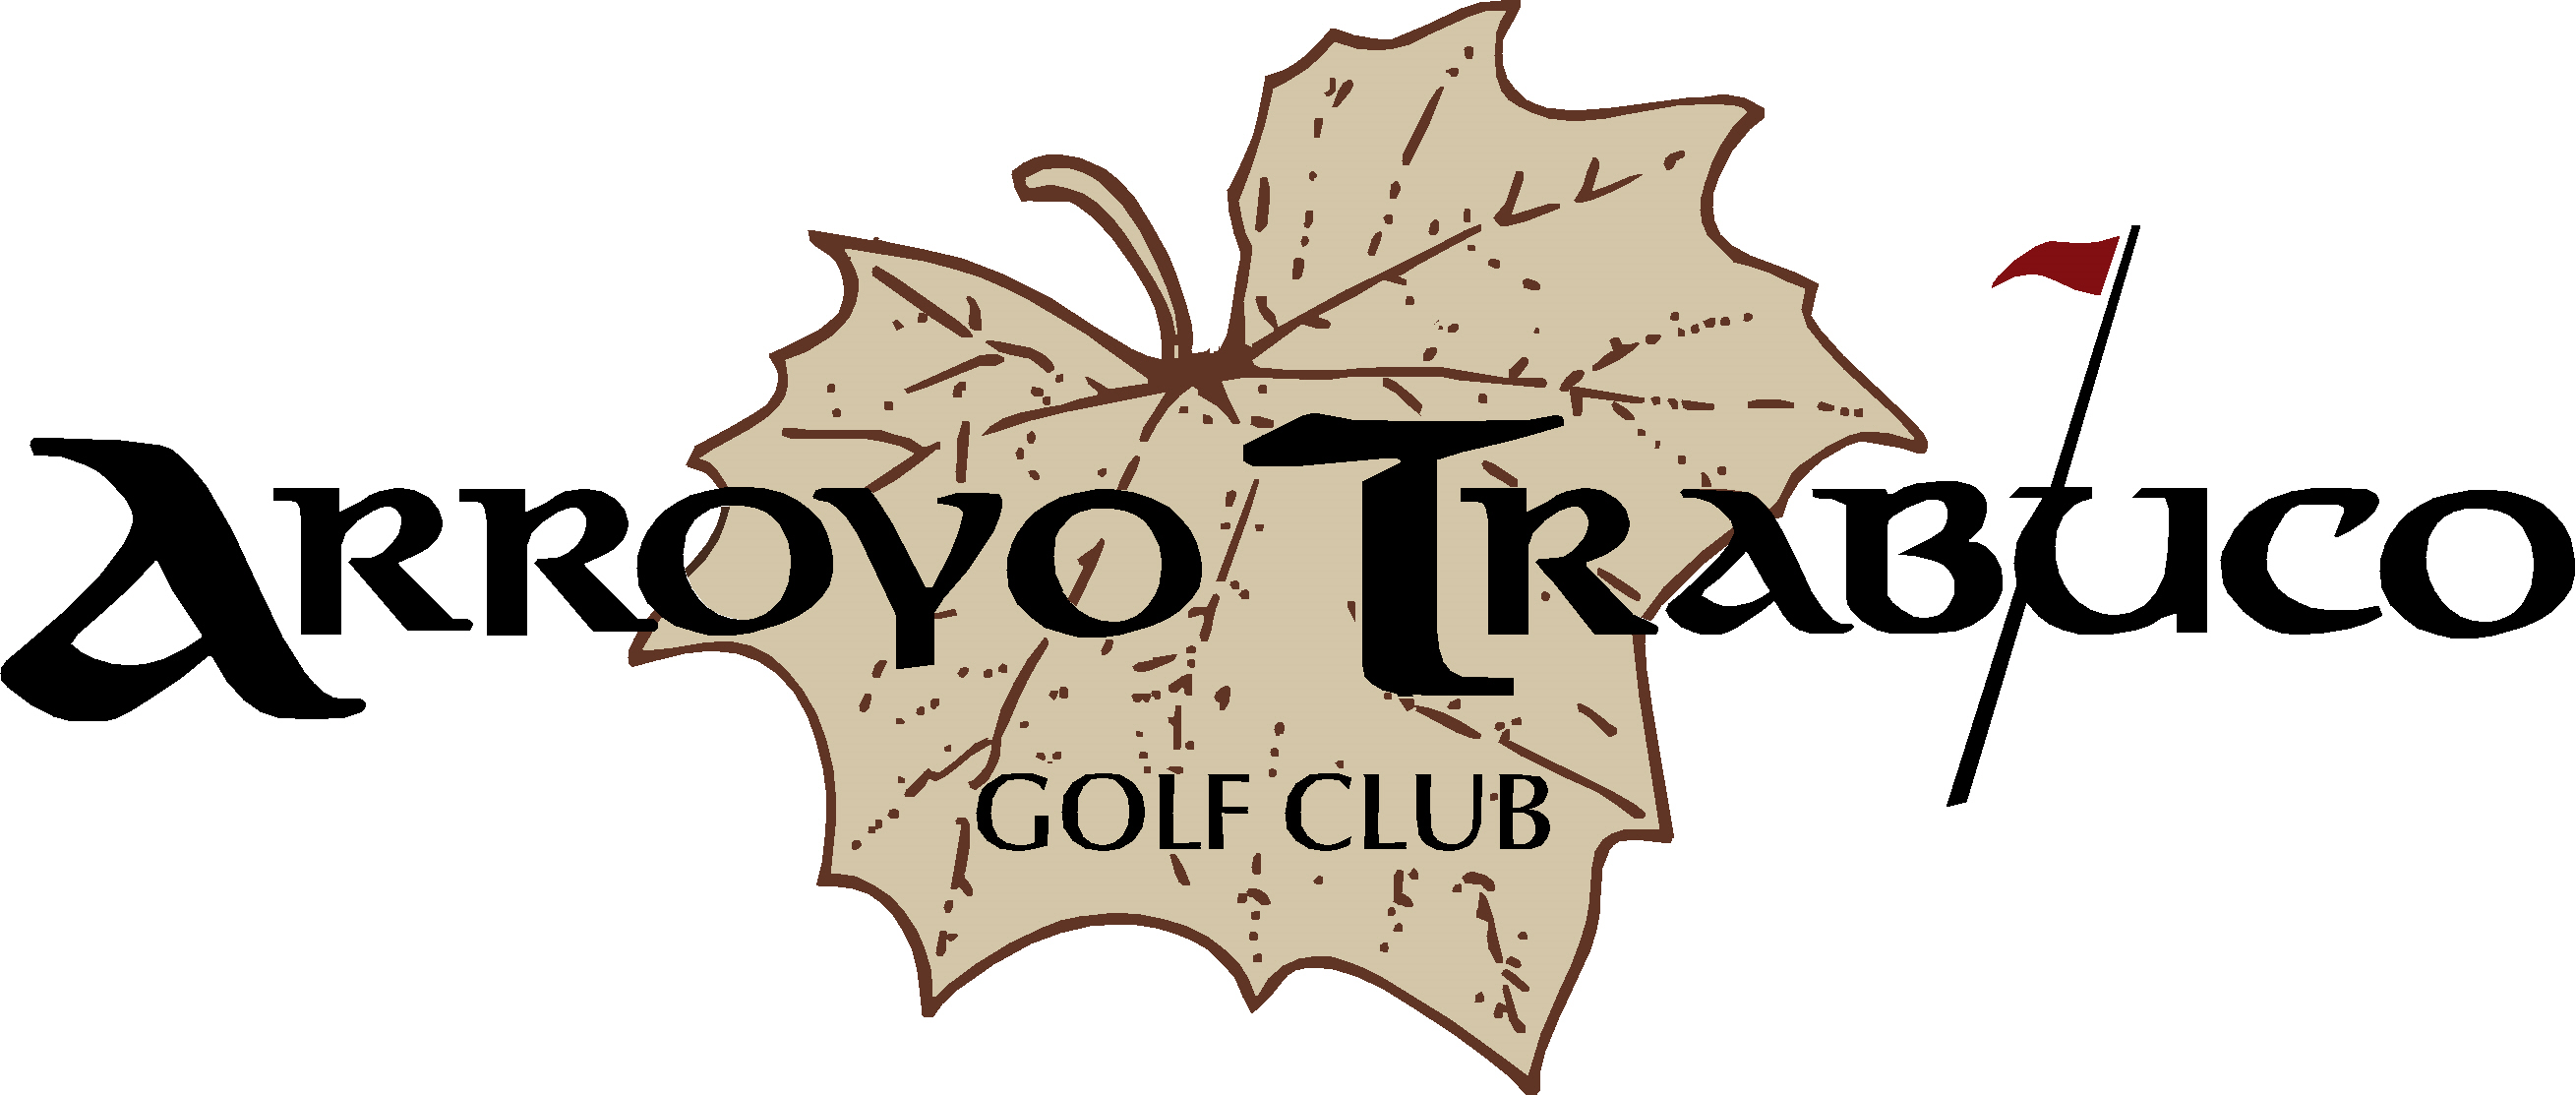 Arroyo Trabuco Golf Club logo